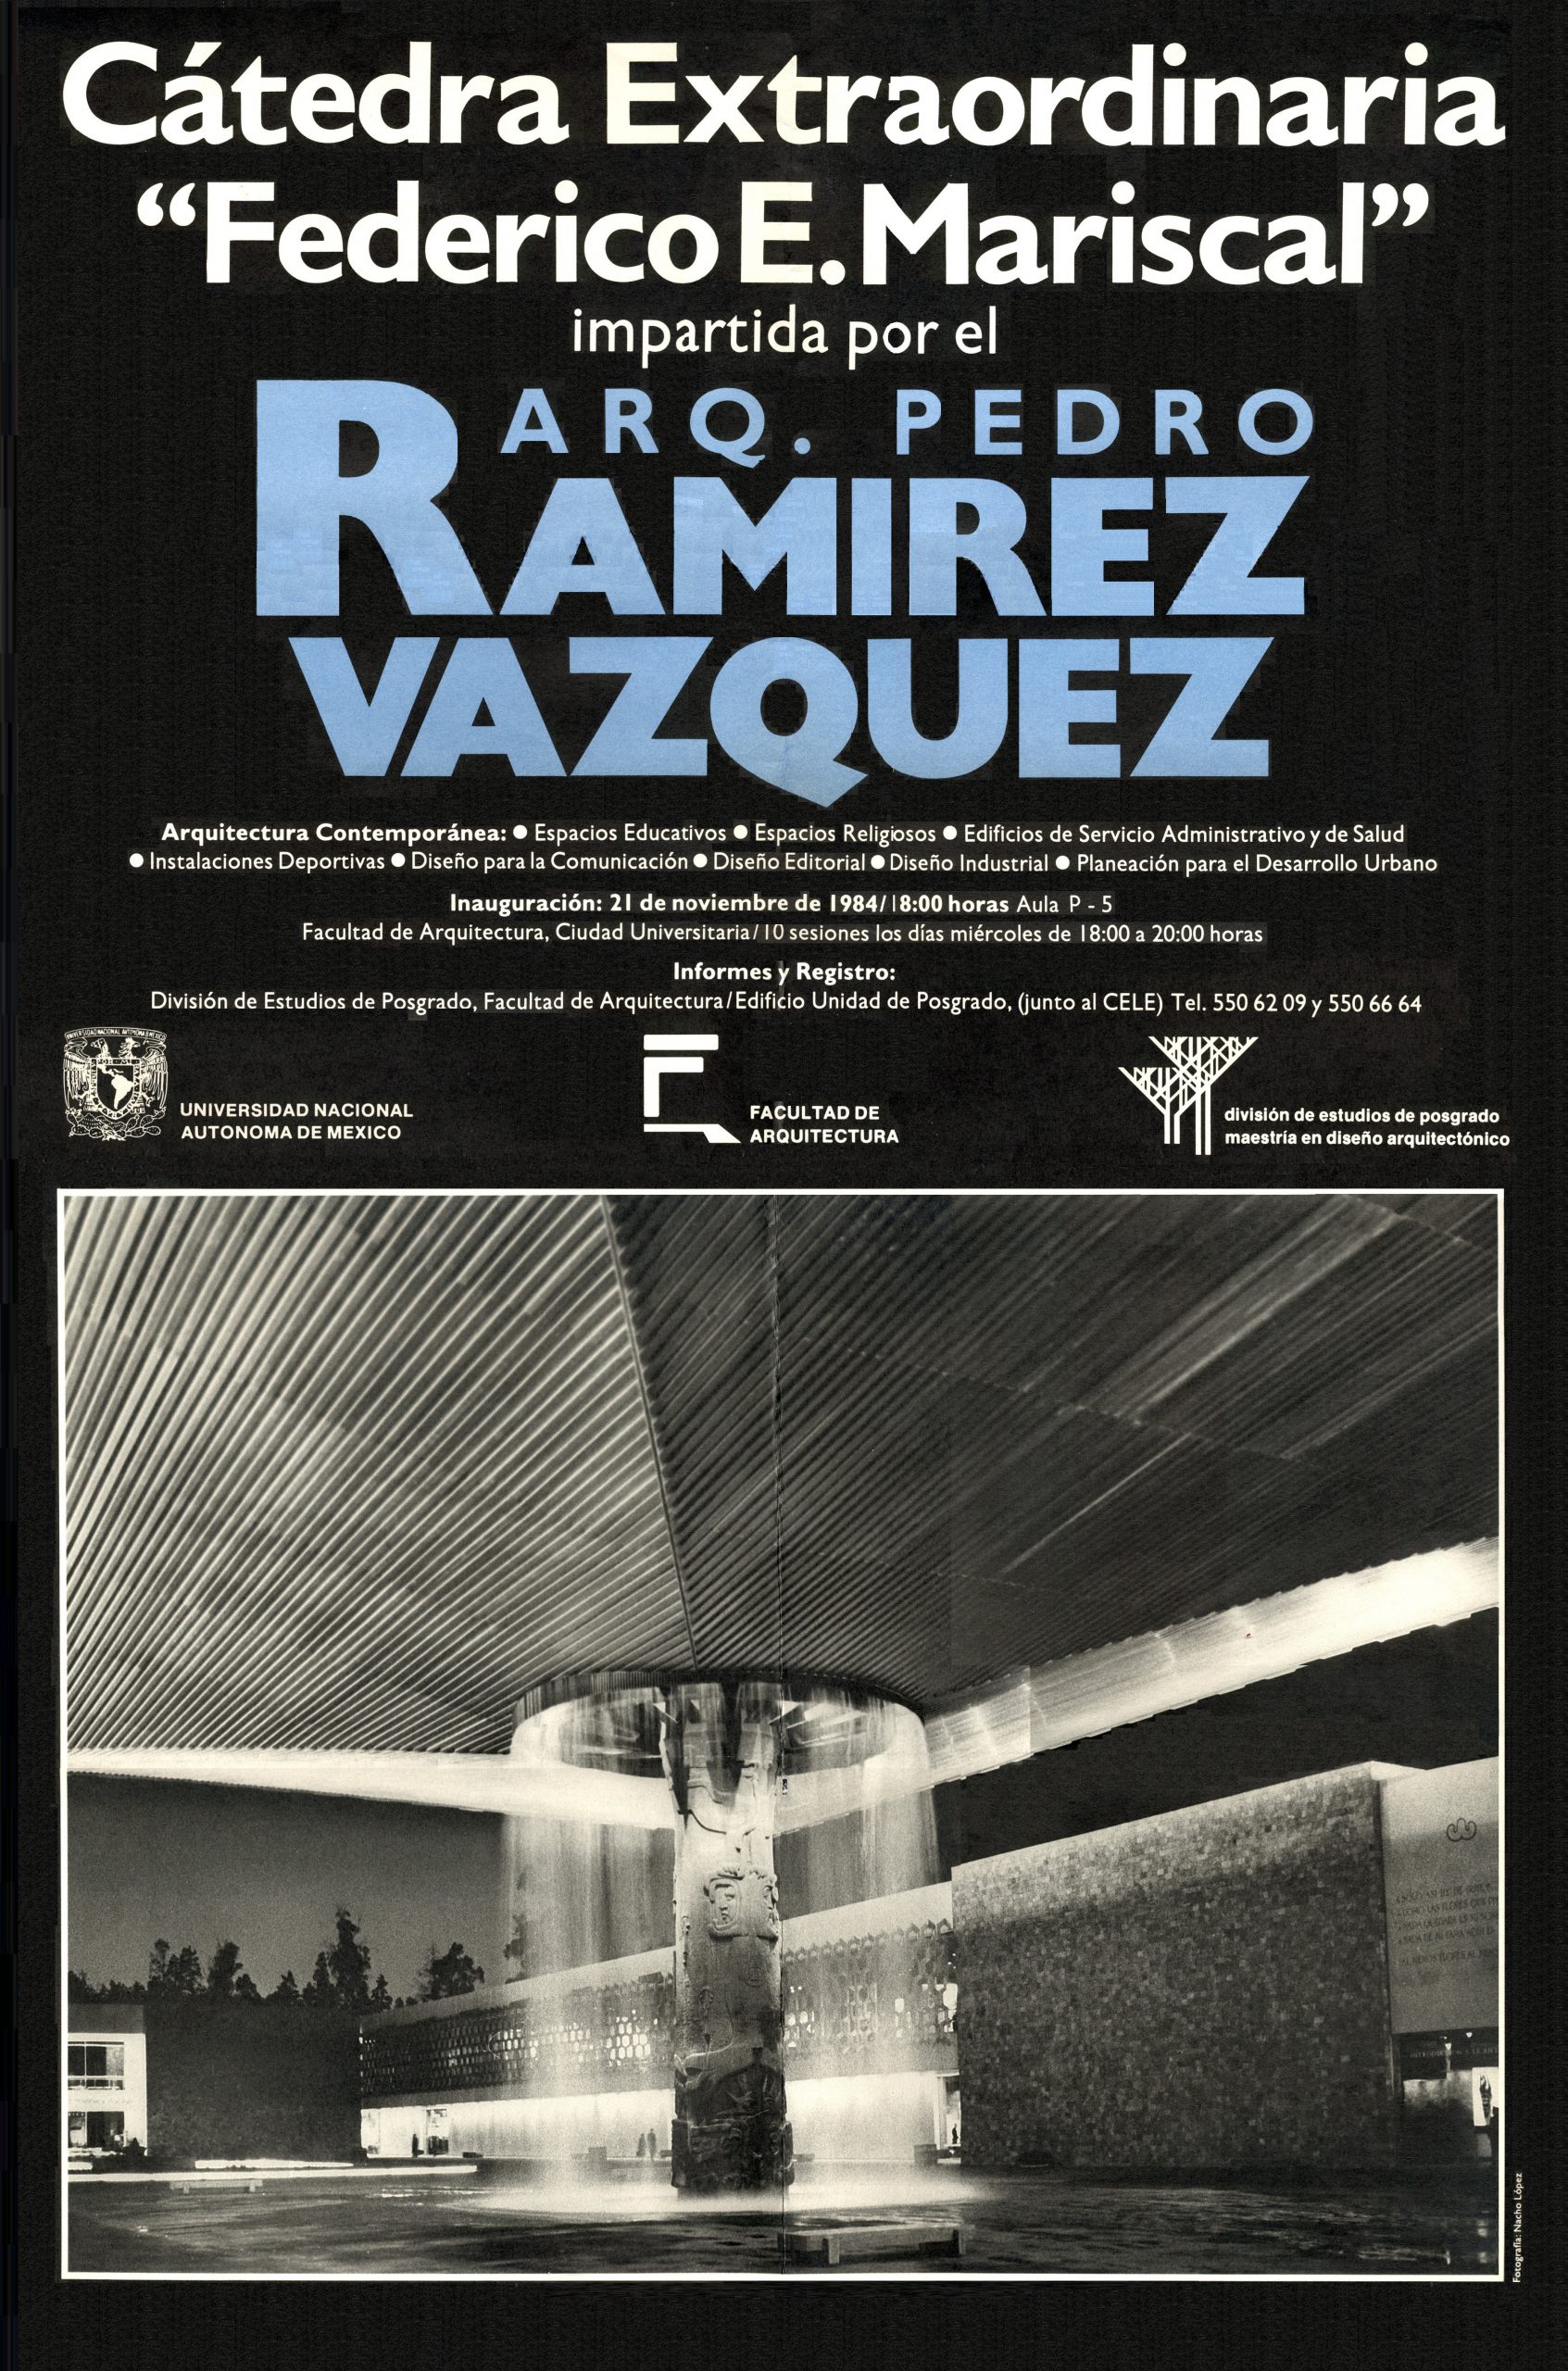 Arq. Pedro Ramírez Vázquez